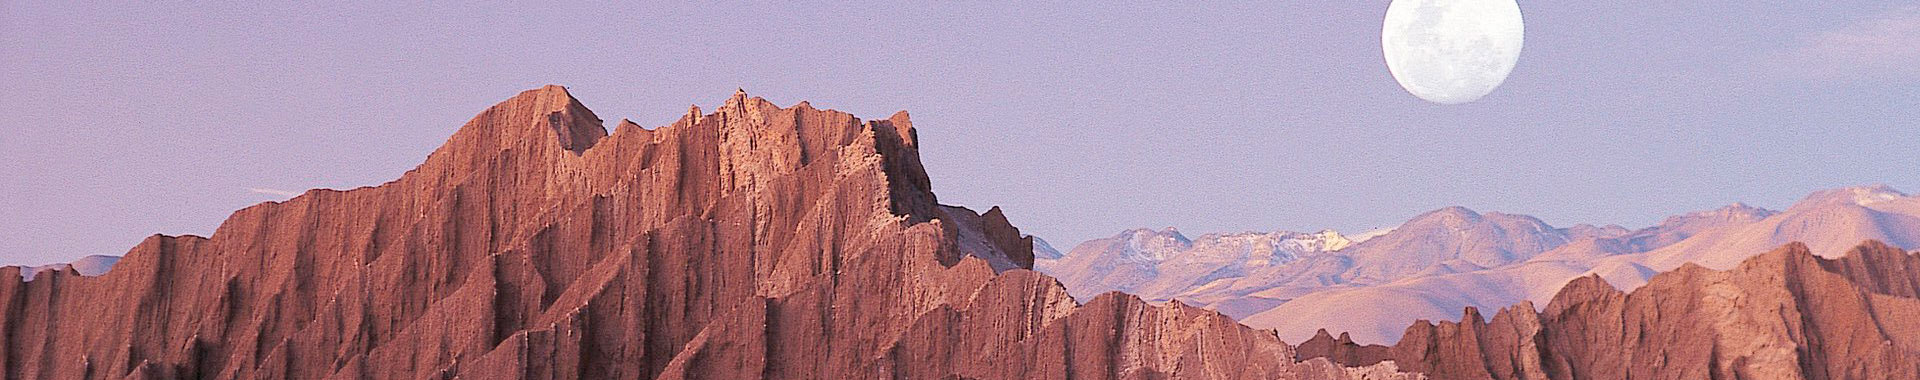 Chile - Alto Atacama - Paseos - Atardecer Luna